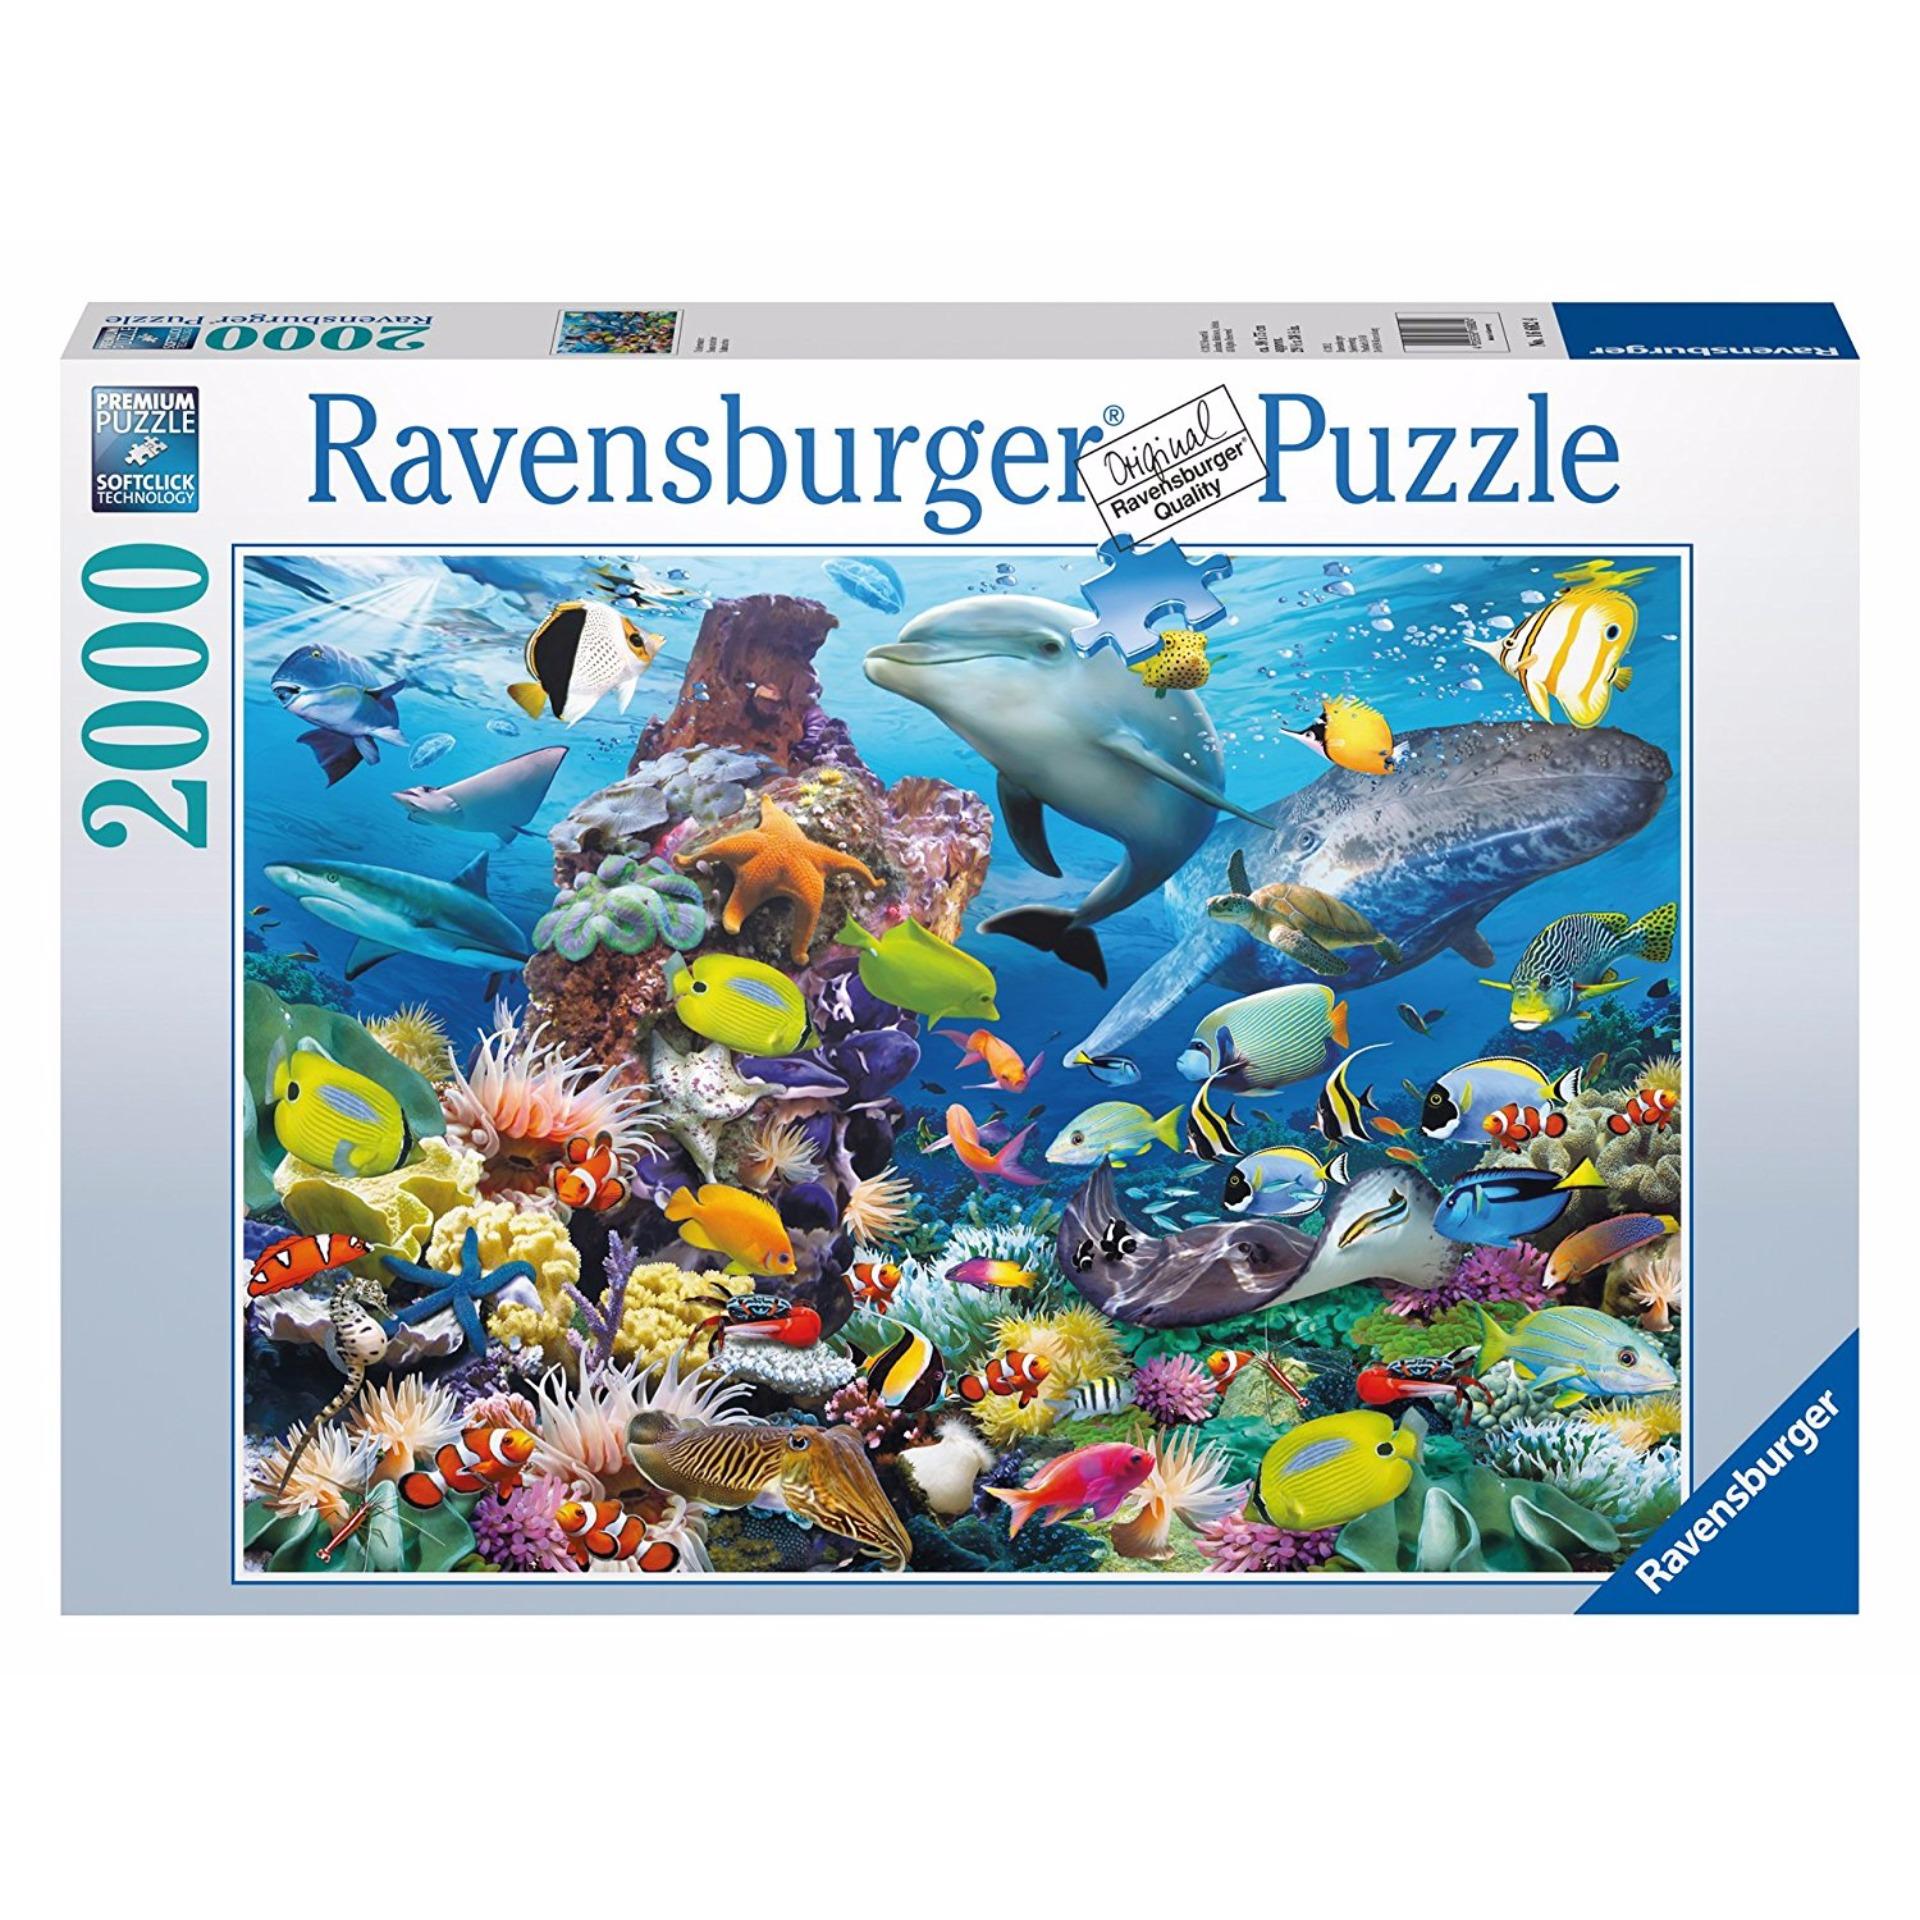 Tranh ghép hình jigsaw puzzle Ravensburger Underwater 2000 mảnh